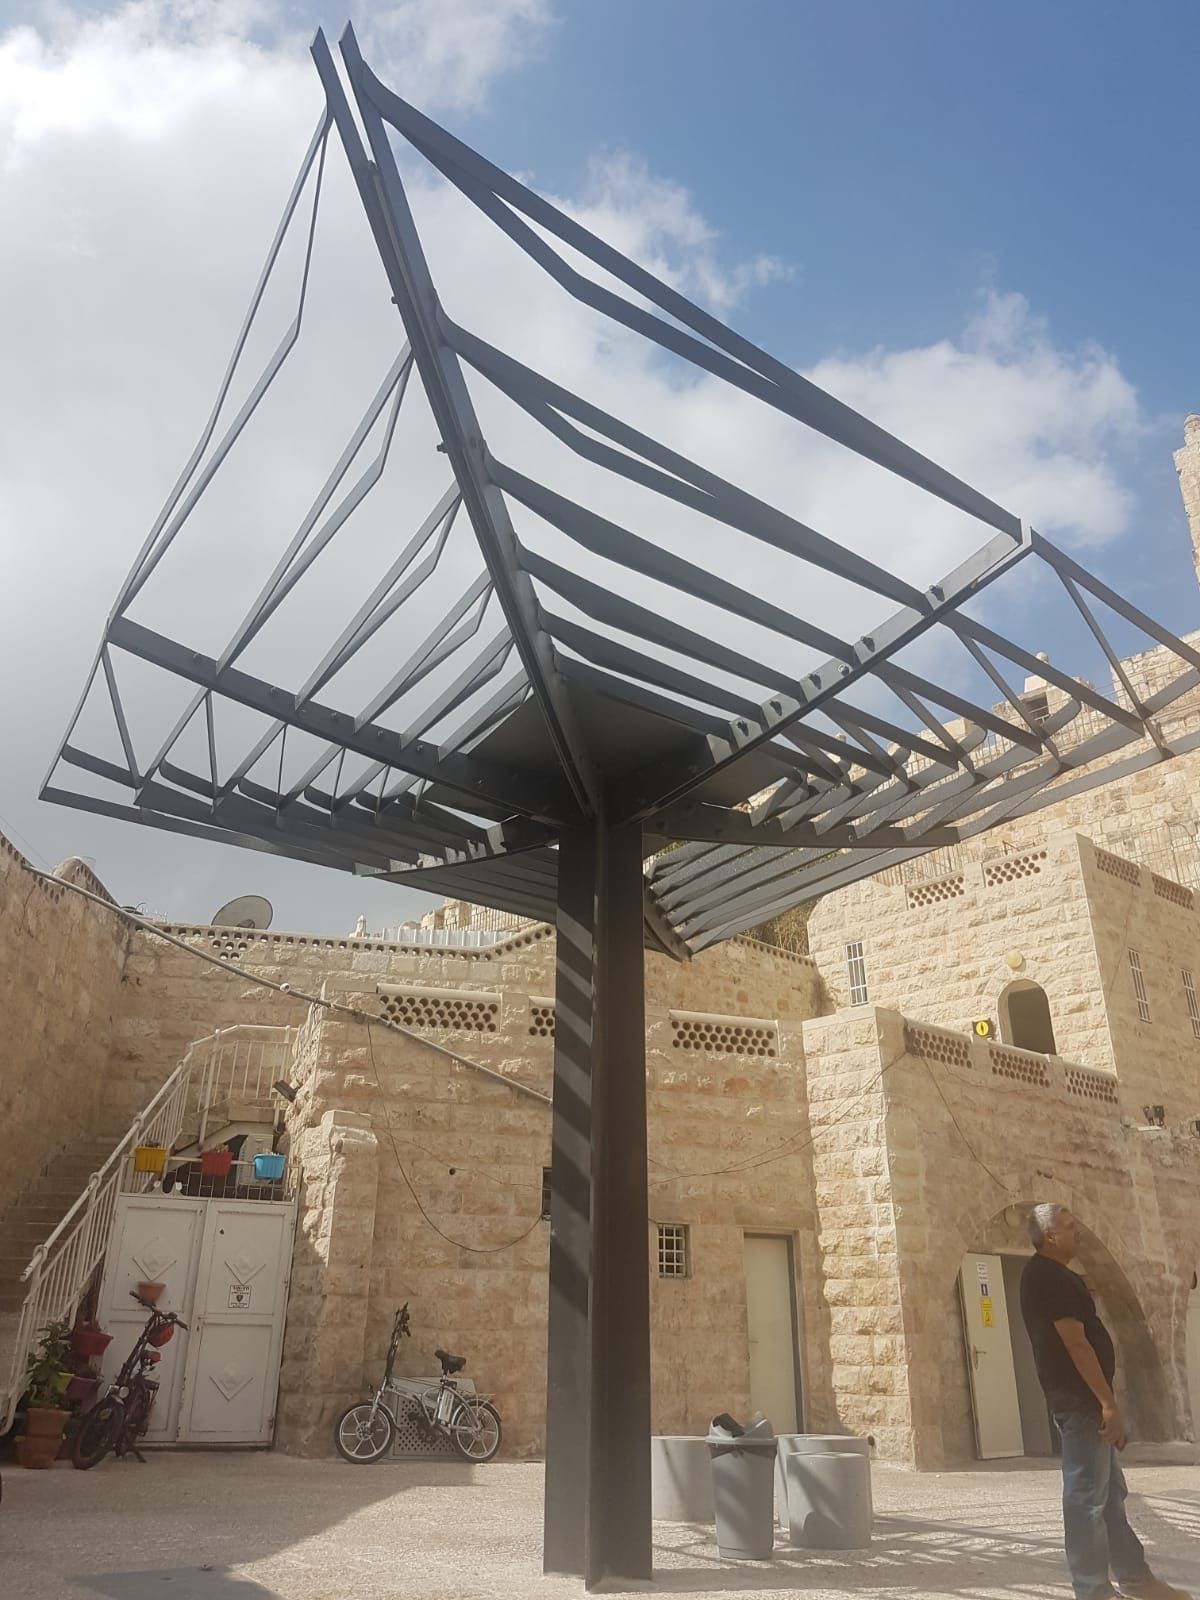 פרגולות בשער שכם, ירושלים